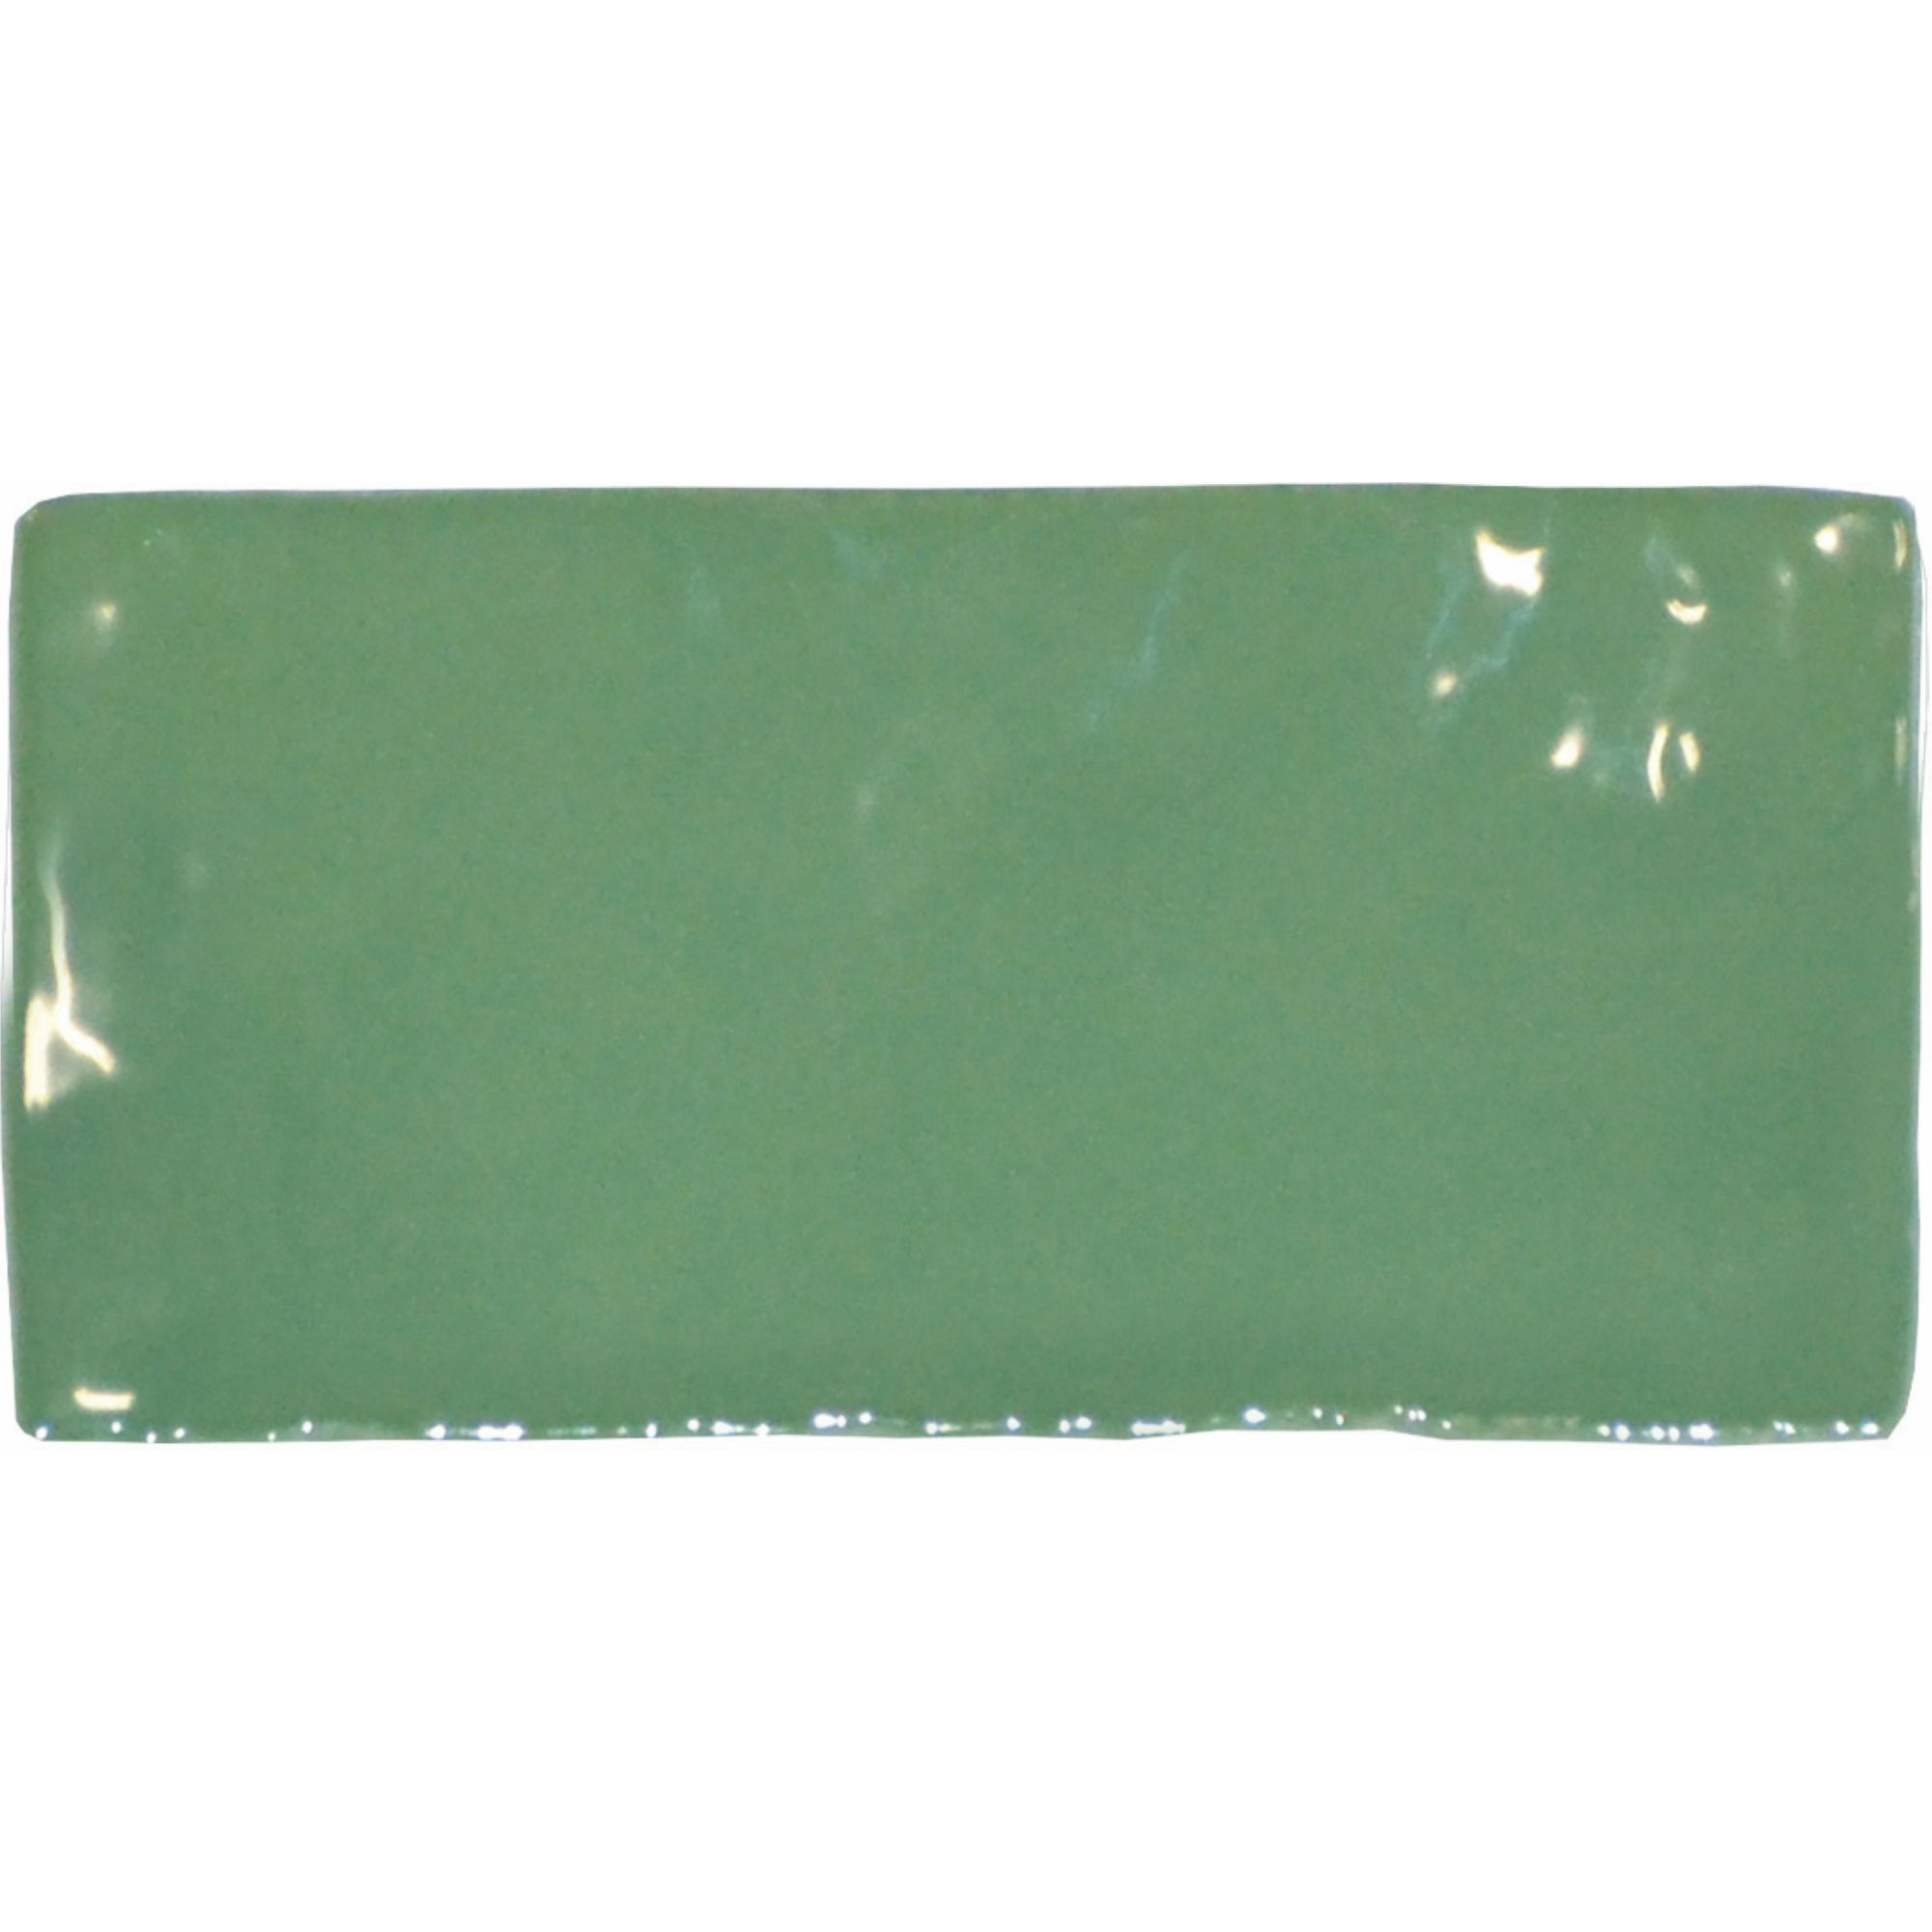 Wandfliese 'Crayon' grün glänzend 6,5 x 13 cm + product picture